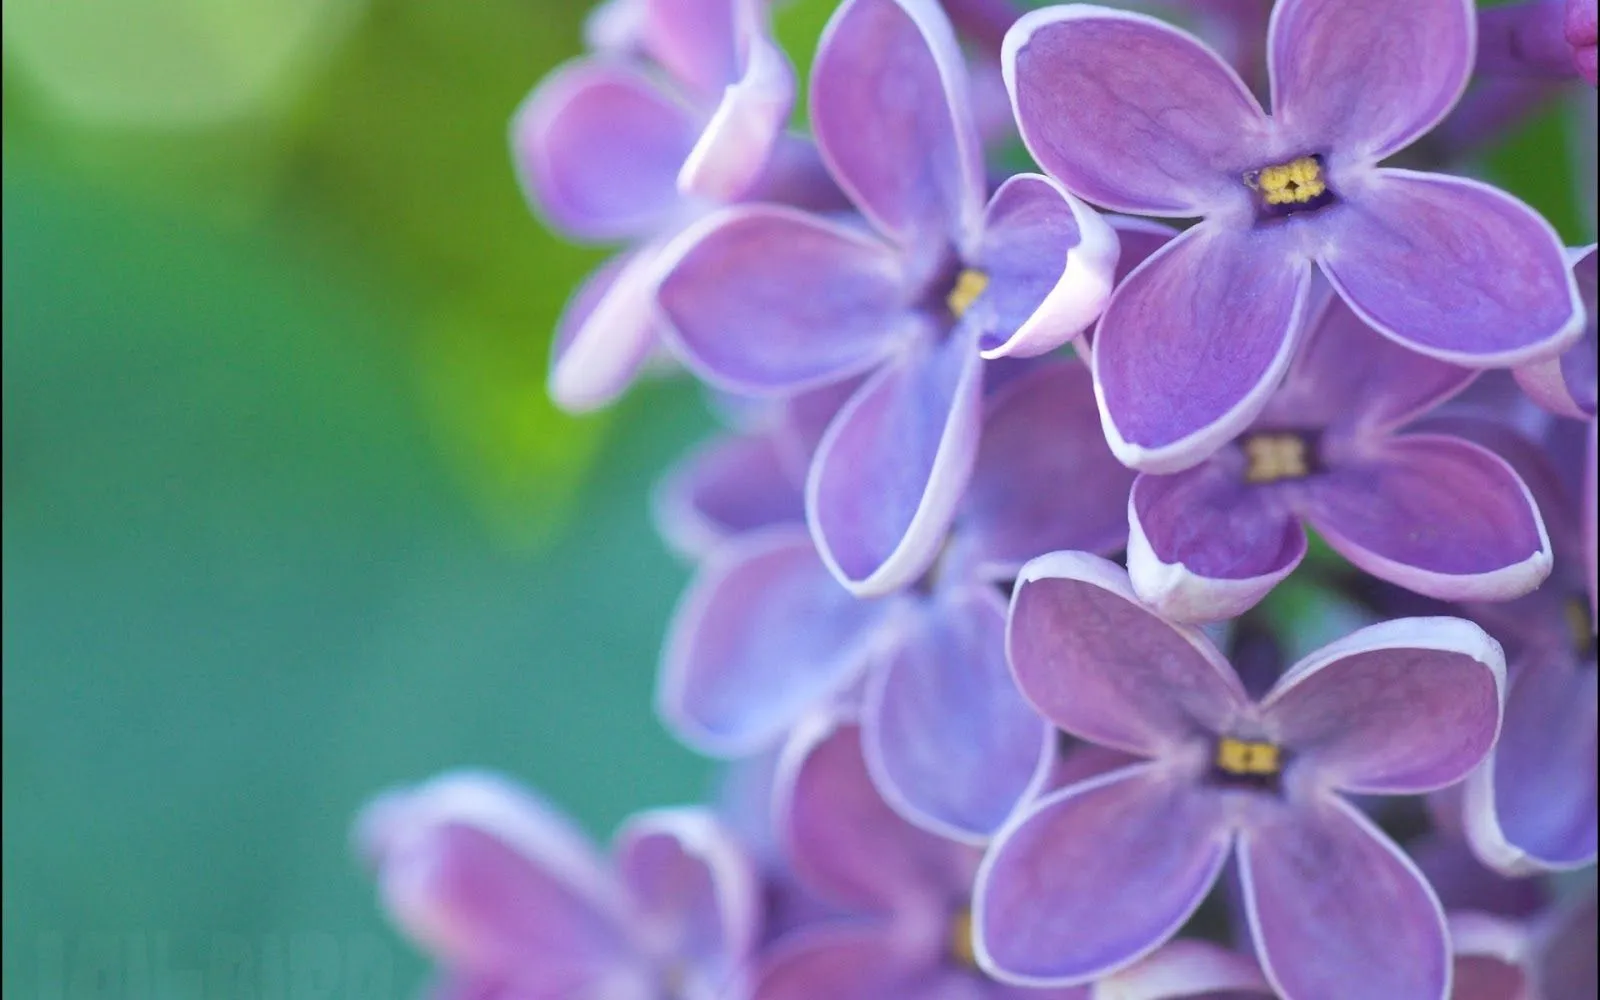 Flores de Lilas Violetas - Fotos de Flores Primaverales | Fotos e ...